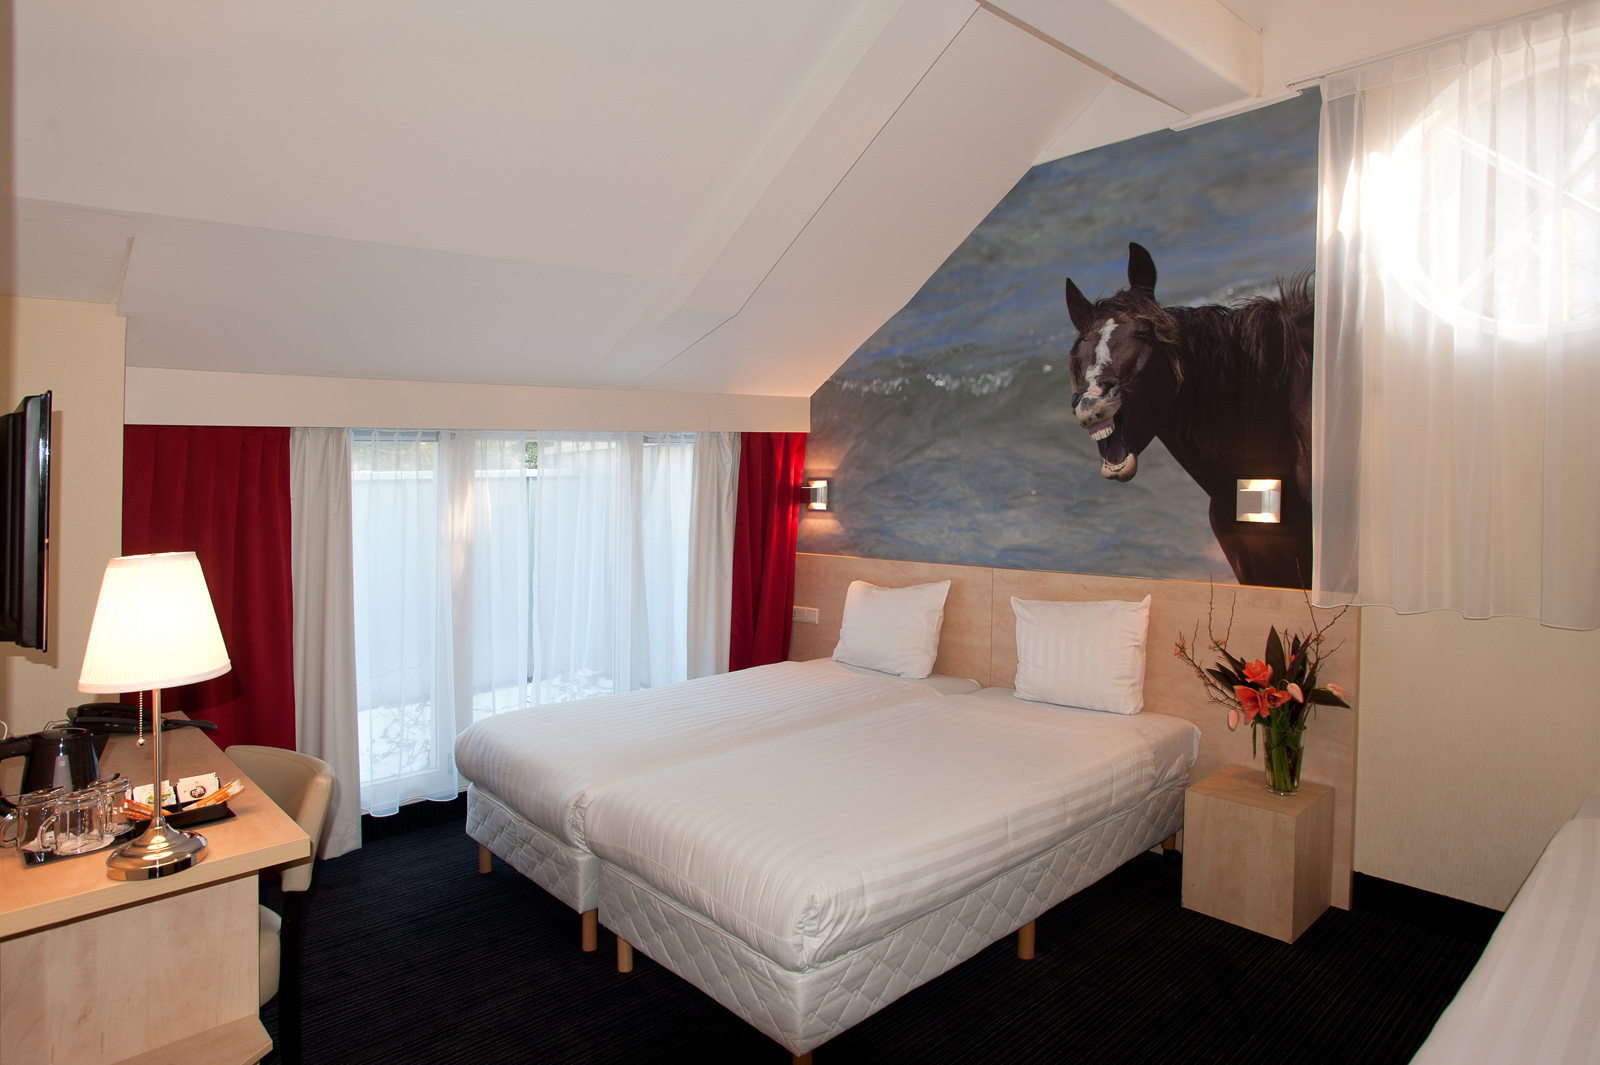 Хорс отели. Отель с лошадьми. Отель с лошадьми в номере. Лошадь в гостиной. Двухэтажный мотель в Амстердаме.